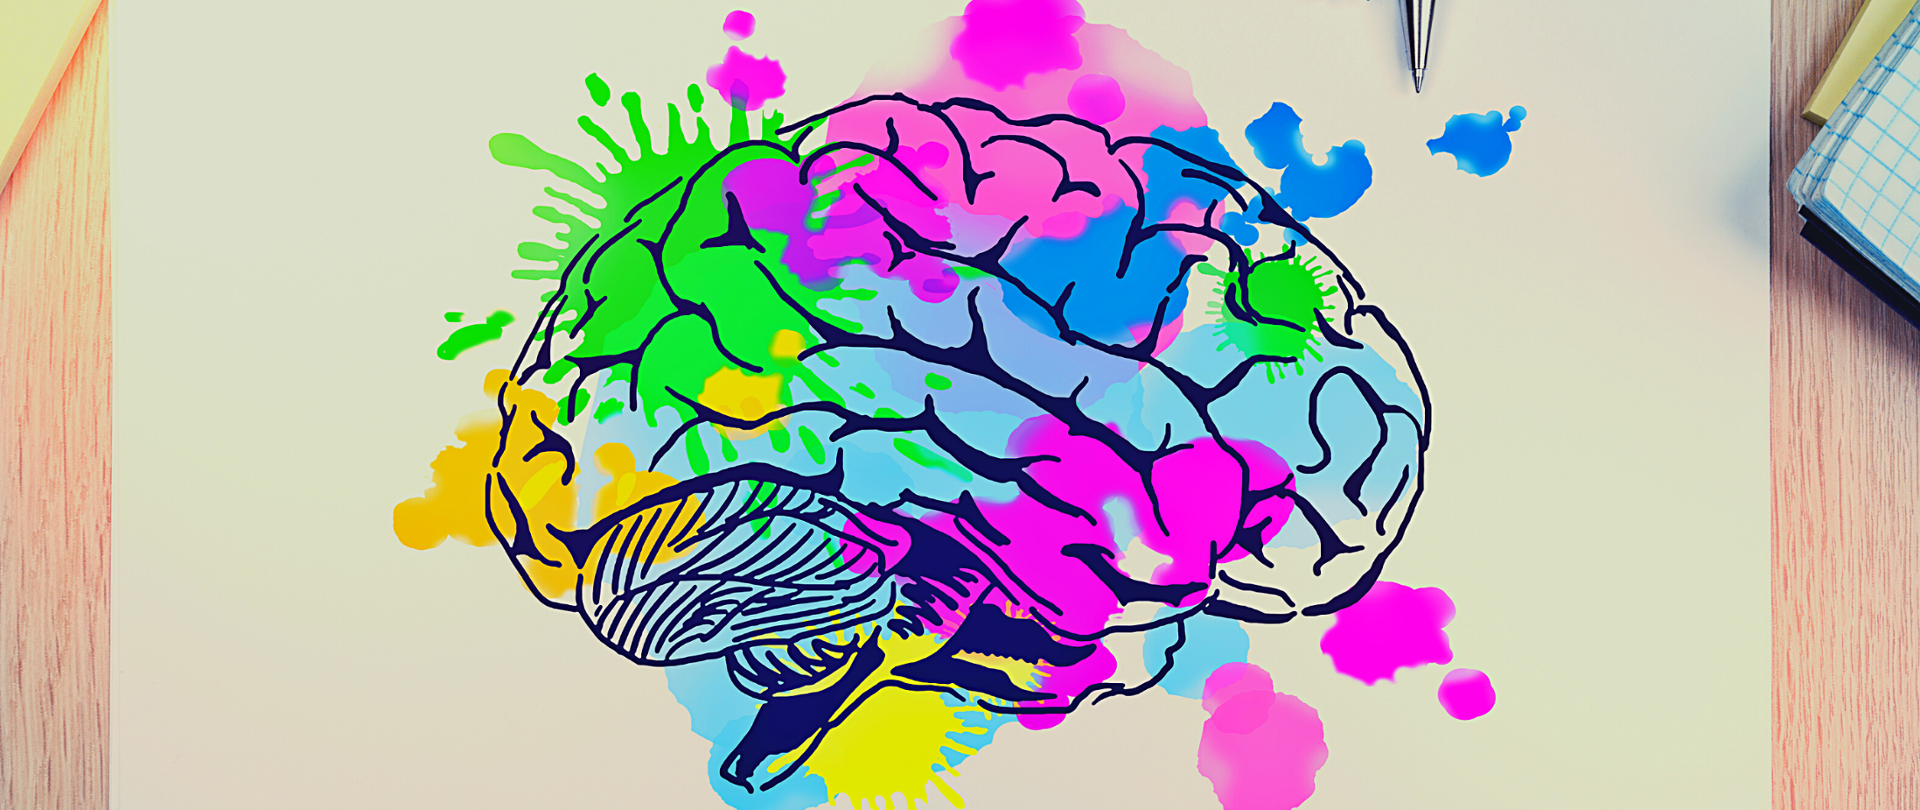 Rysunek na kartce - ludzki mózg. Poszczególne części pokolorowane w różnych kolorach - błękitnym, różowym, żółtym, zielonym.